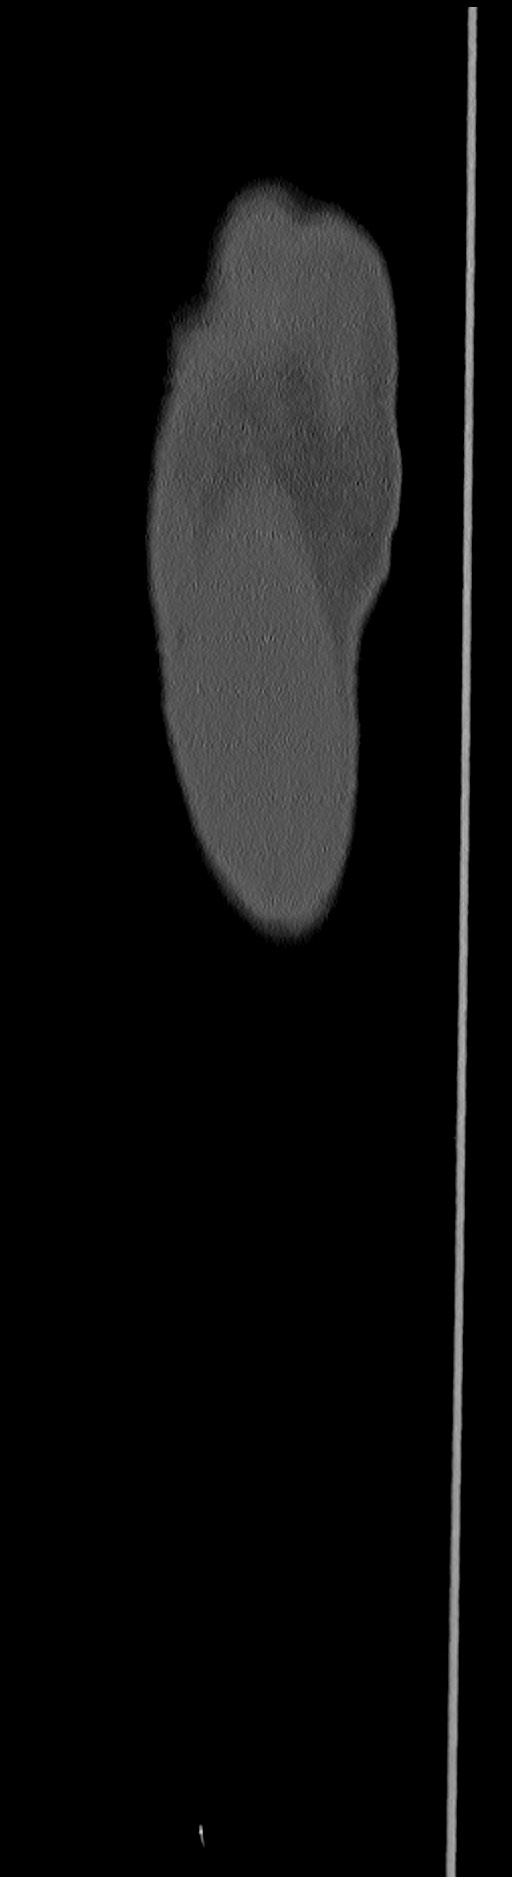 Chronic osteomyelitis (with sequestrum) (Radiopaedia 74813-85822 C 7).jpg